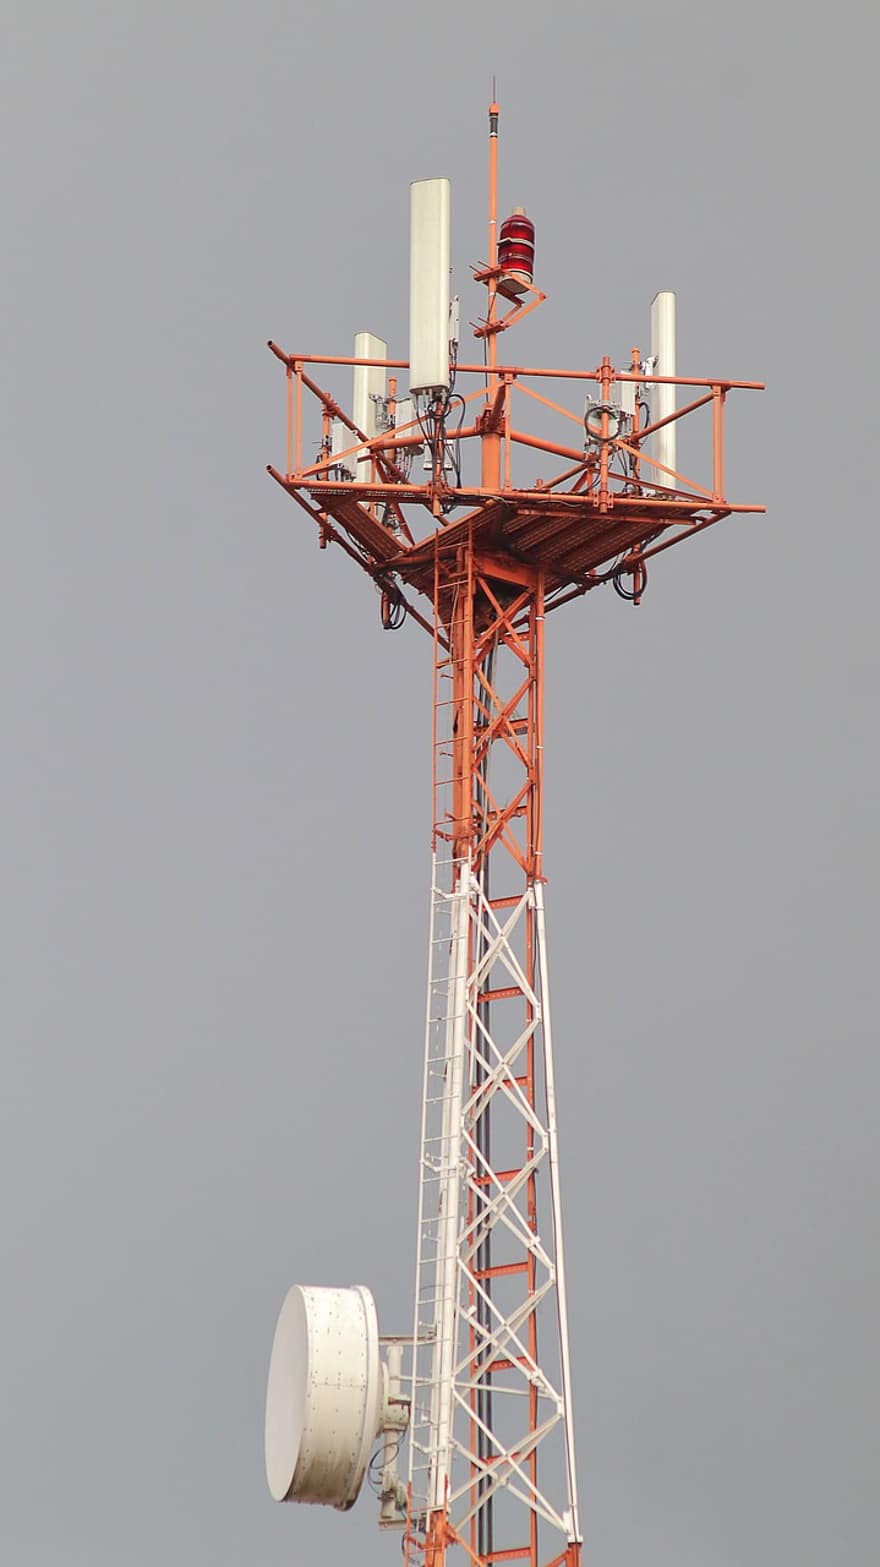 torre de telecomunicaciones, mástil de radio, torre, antena, mástil, estructura, telecomunicaciones, frecuencia, transmisión, conexión